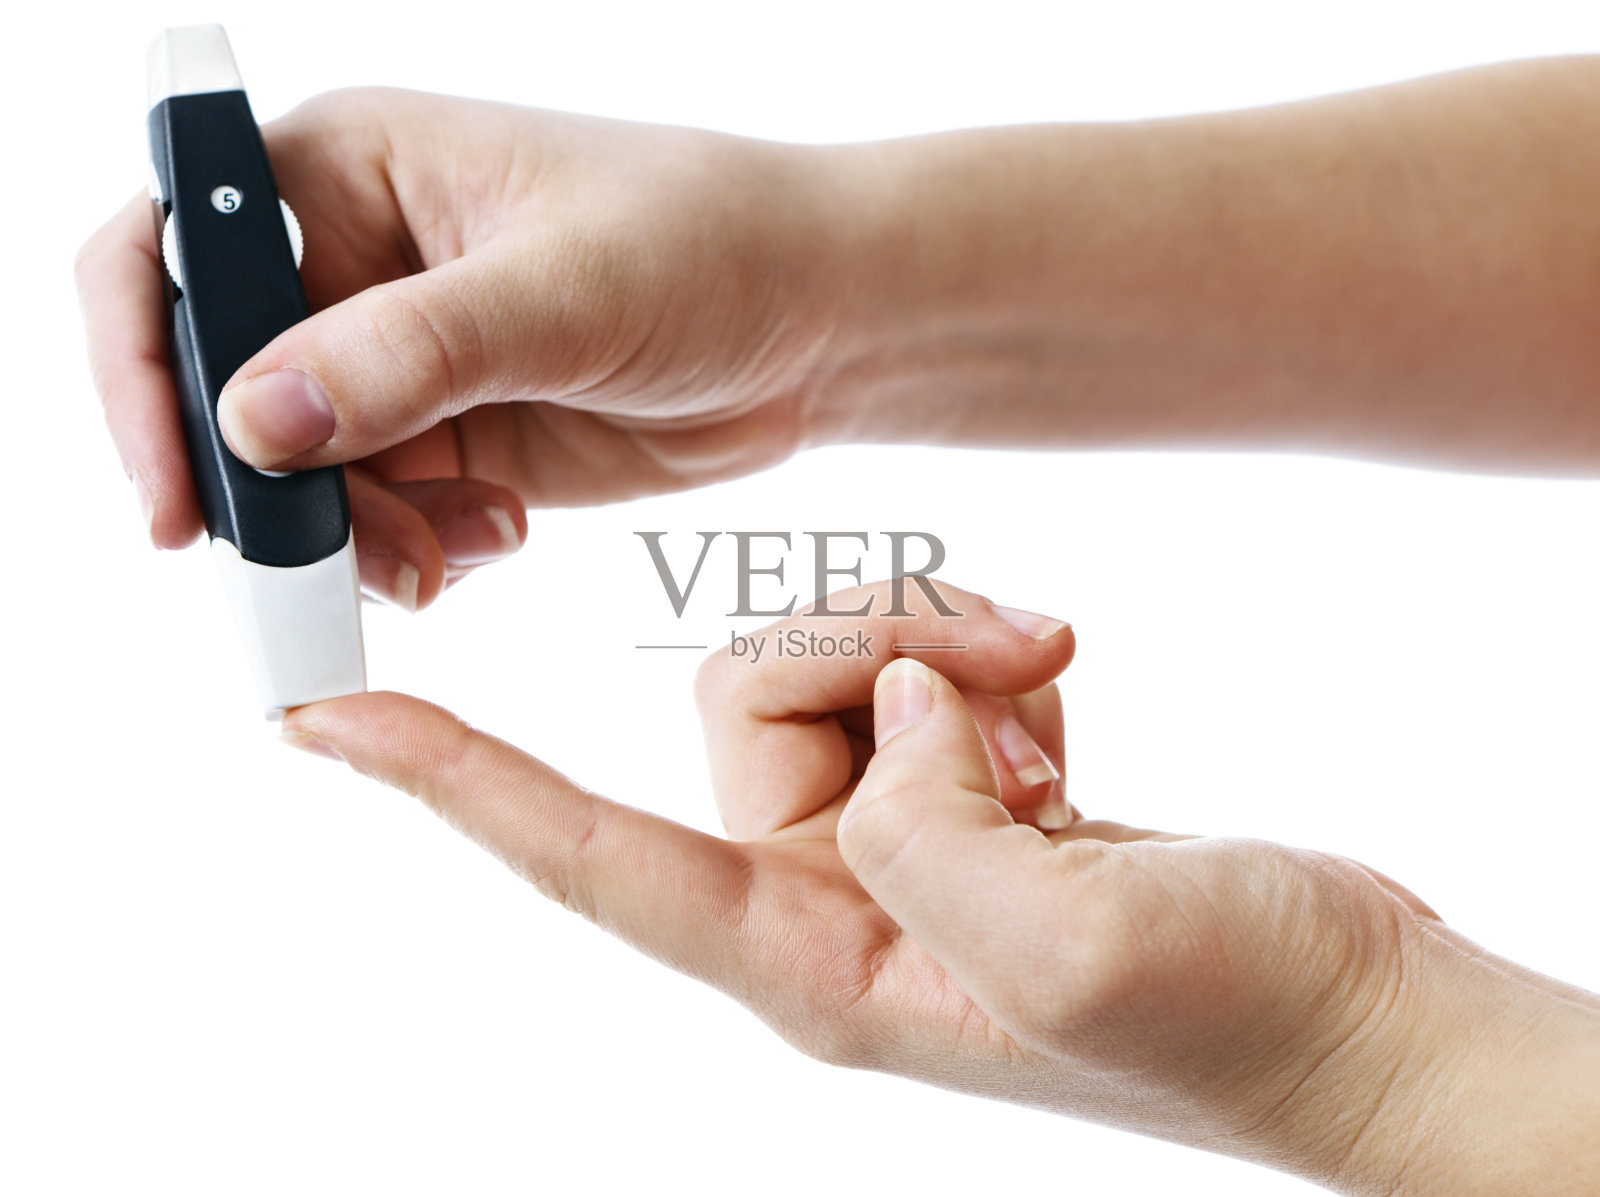 糖尿病患者用手指刺测血糖照片摄影图片